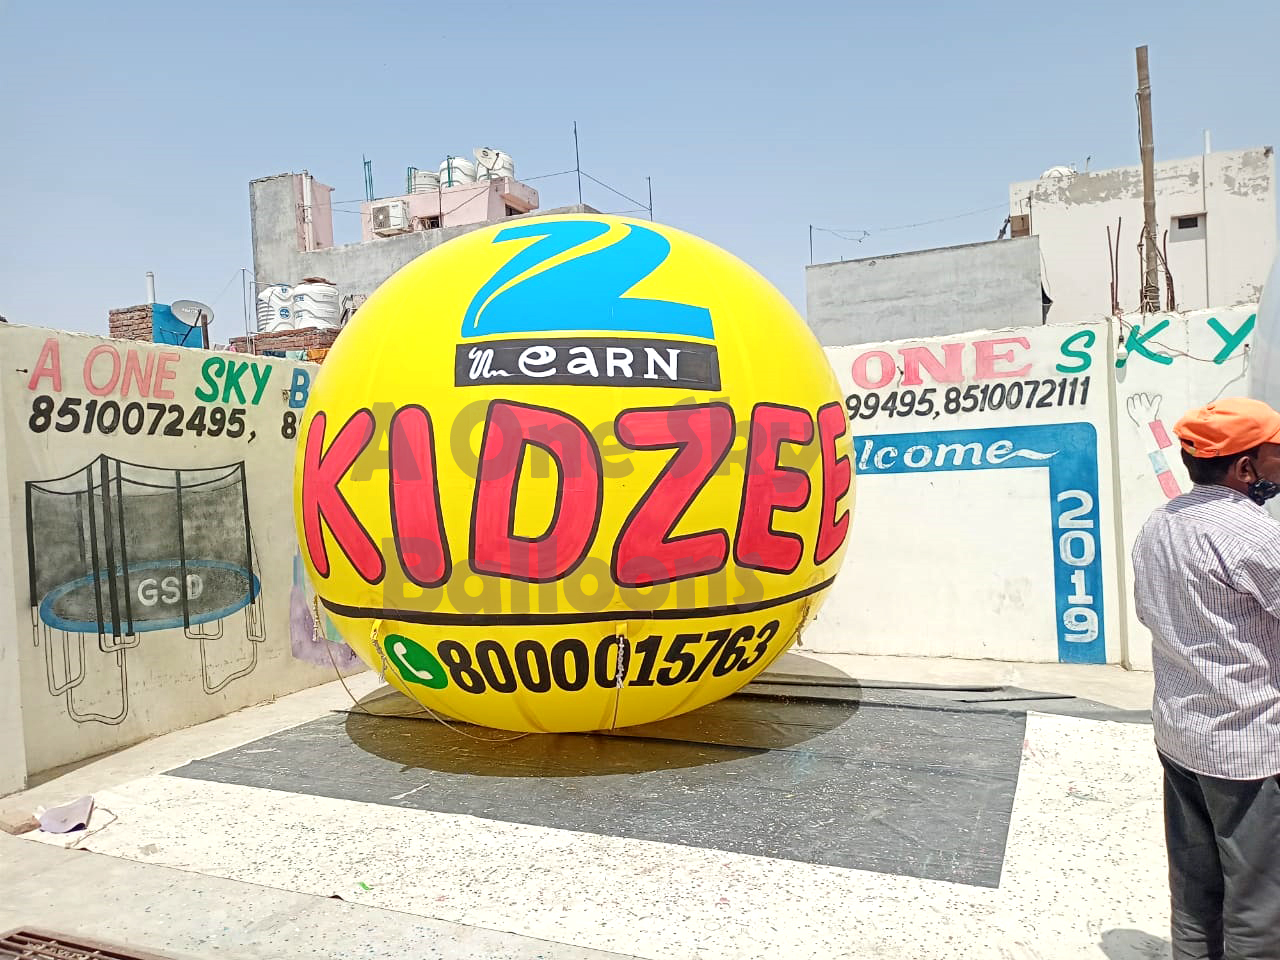 Kidzee Advertising Balloon Promotional Sky Balloon